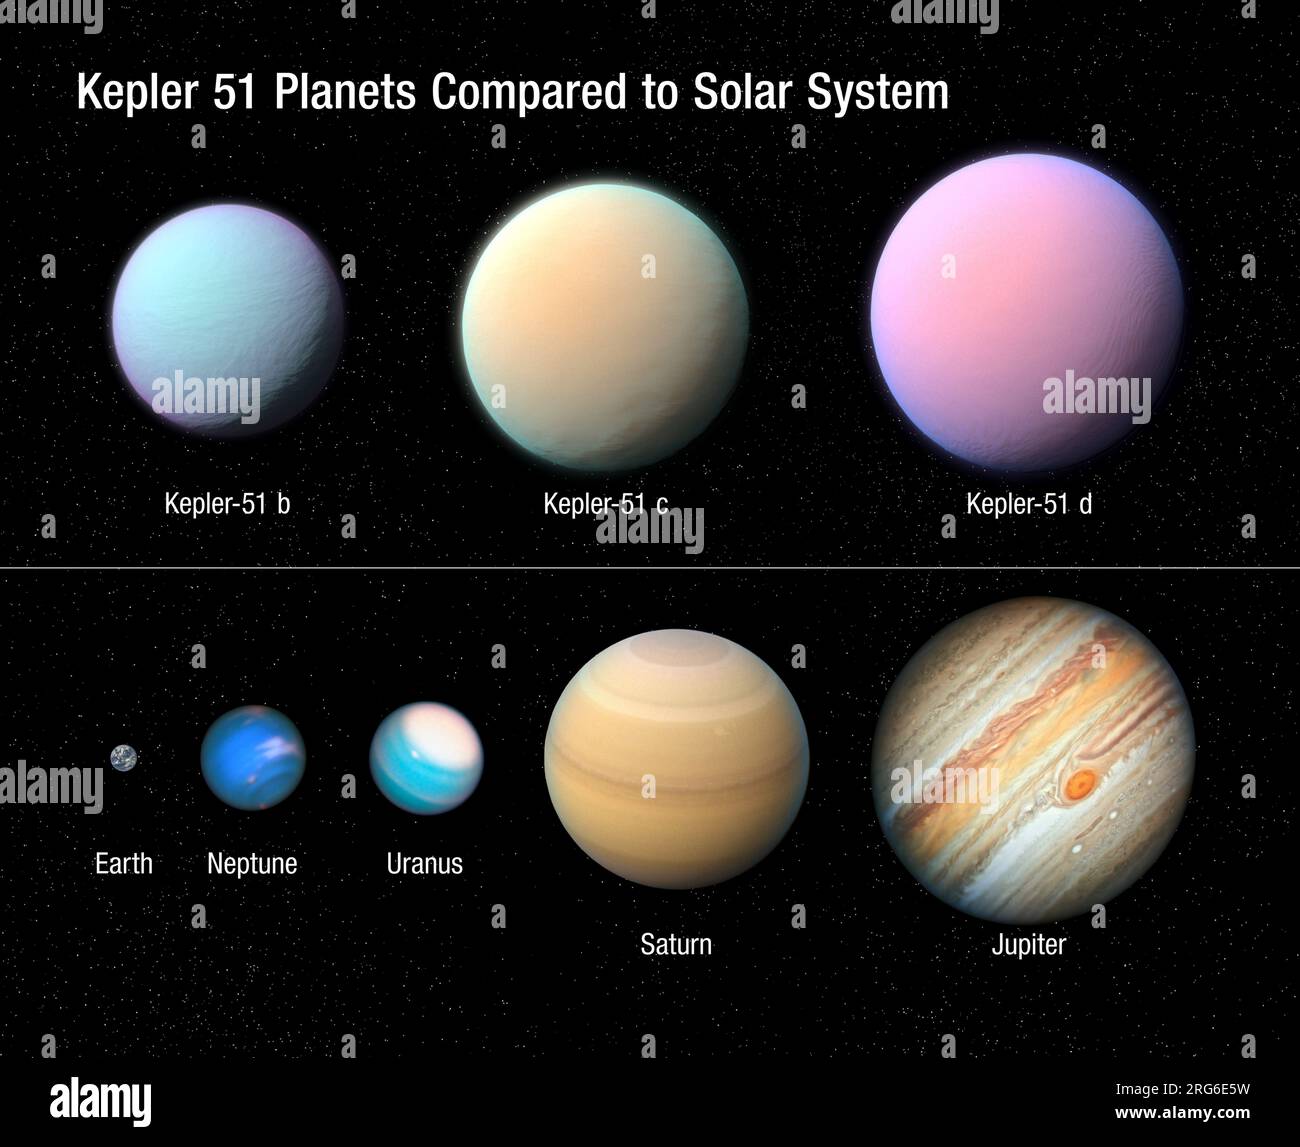 Illustrazione che raffigura i tre pianeti giganti che orbitano attorno alla stella simile al Sole Kepler 51 rispetto ad alcuni pianeti del nostro sistema solare. Foto Stock